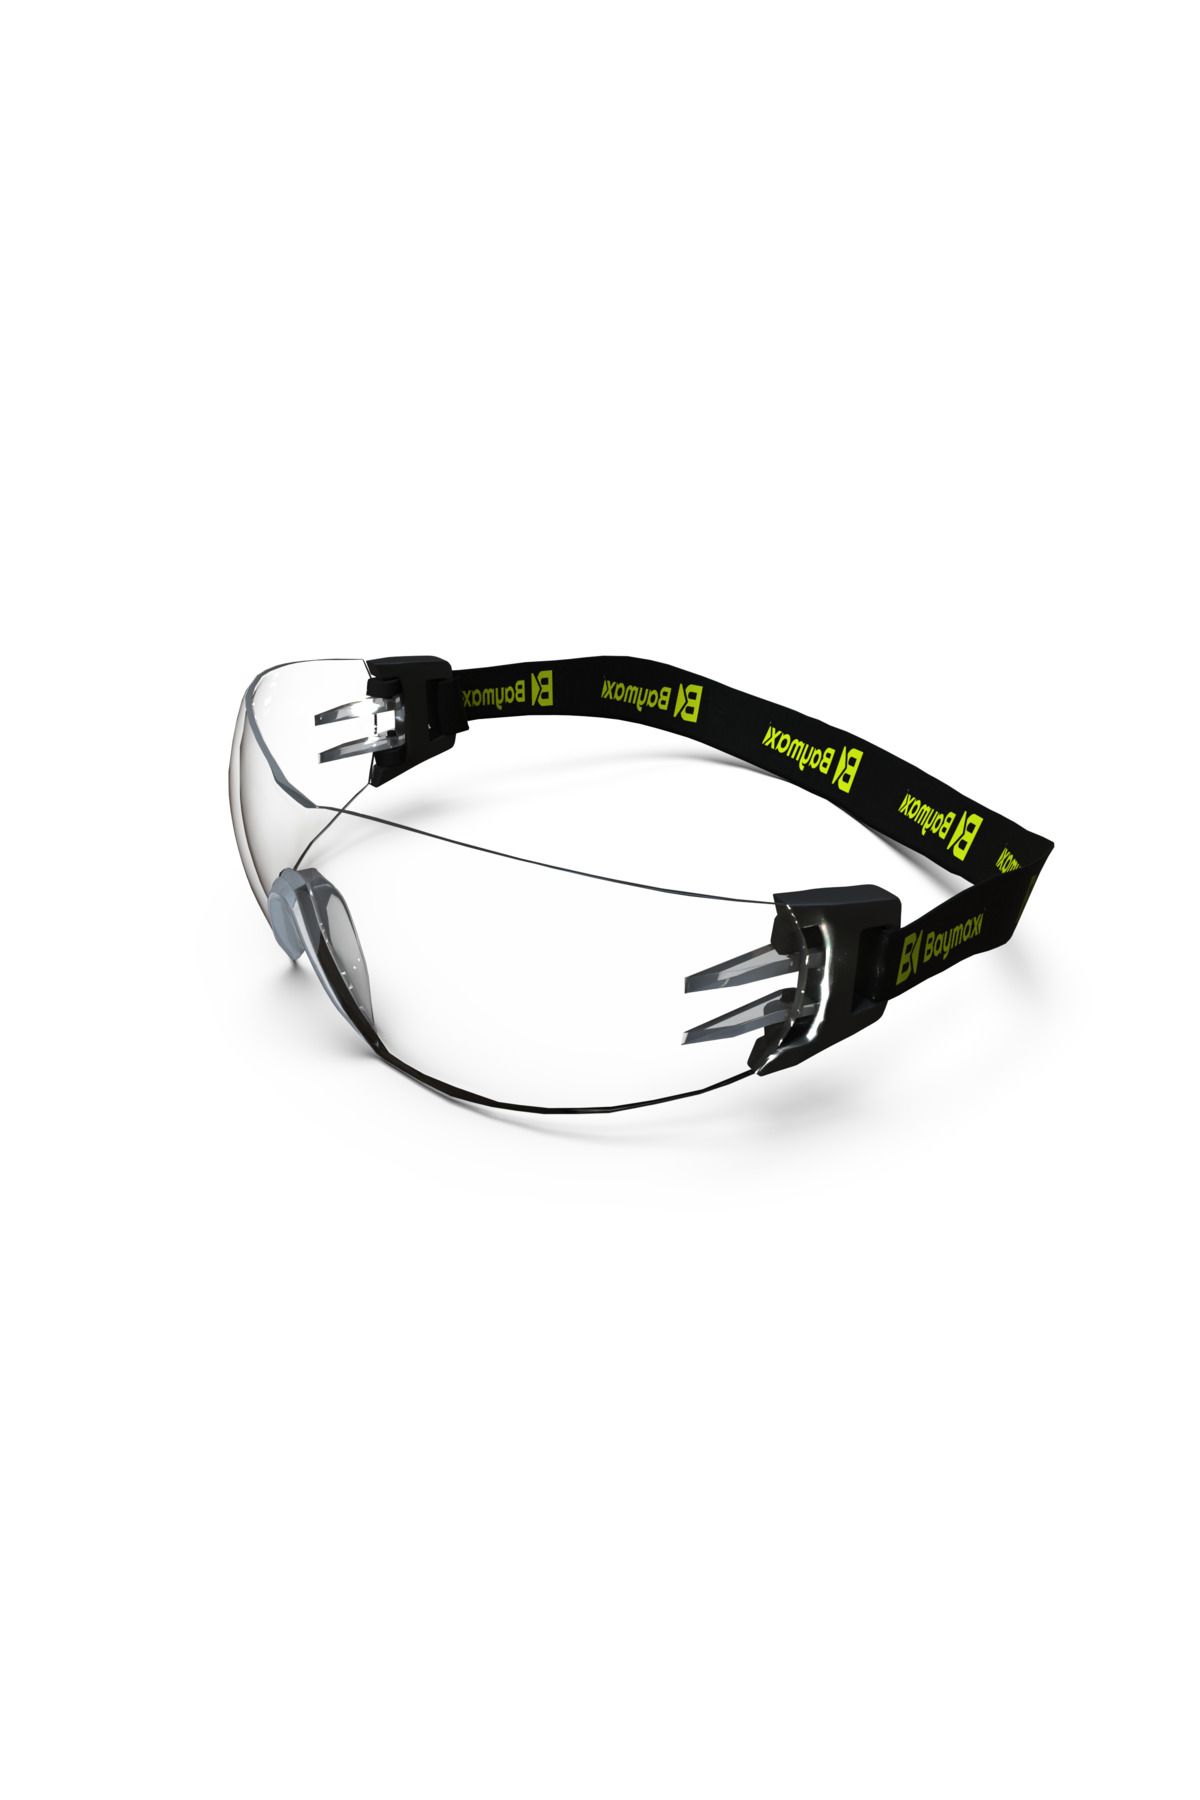 Baymax Koruyucu Gözlük Bx-2500 Solo Ergo Şeffaf (buğulanmaz) Antifog Iş Güvenliği Gözlük